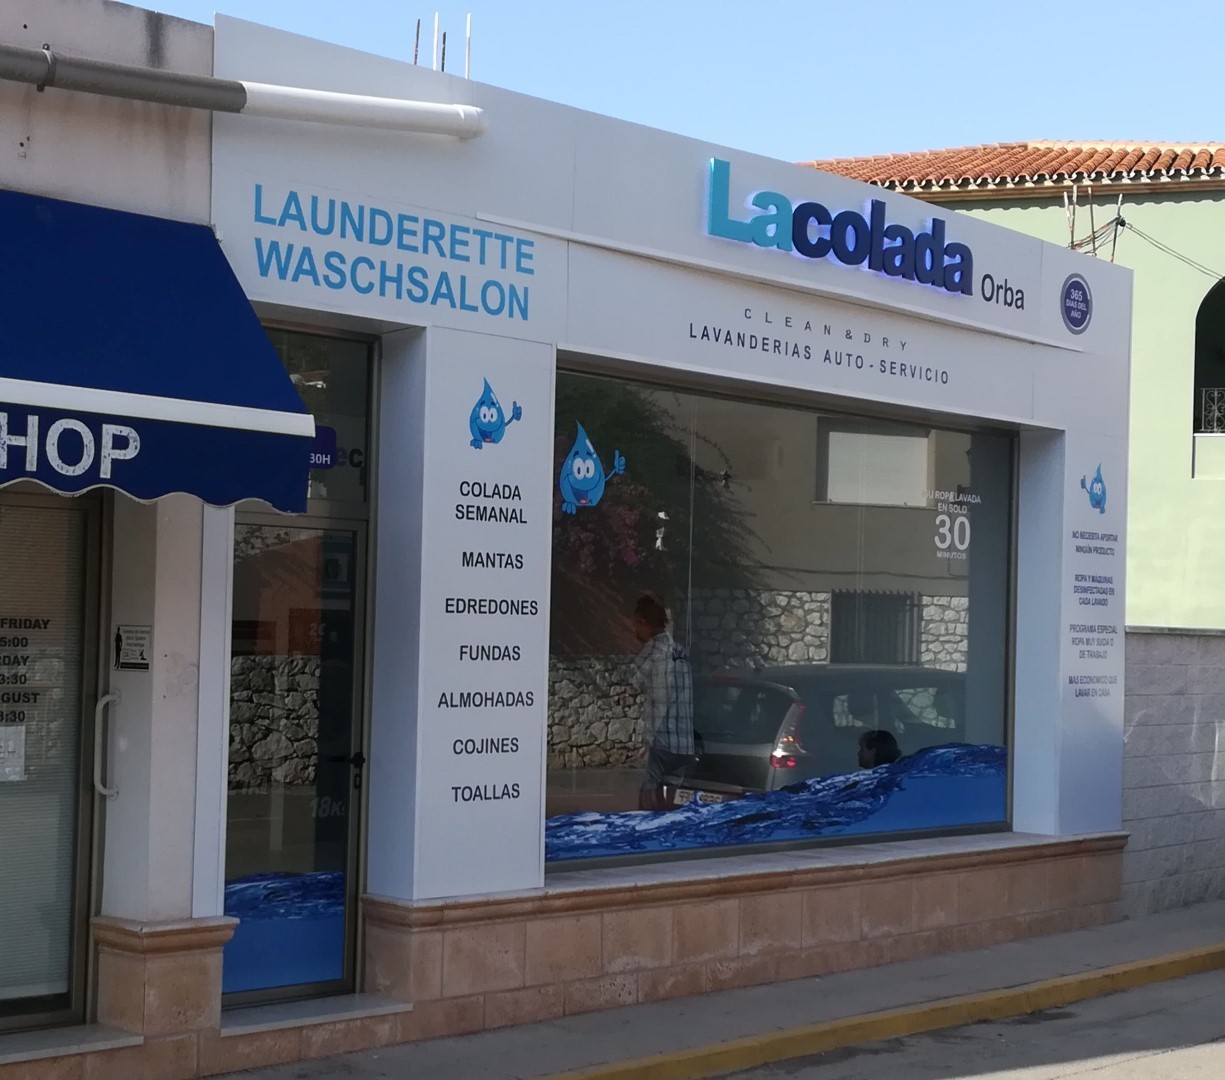 Lavanderia Autoservicio, Orba (Alicante)